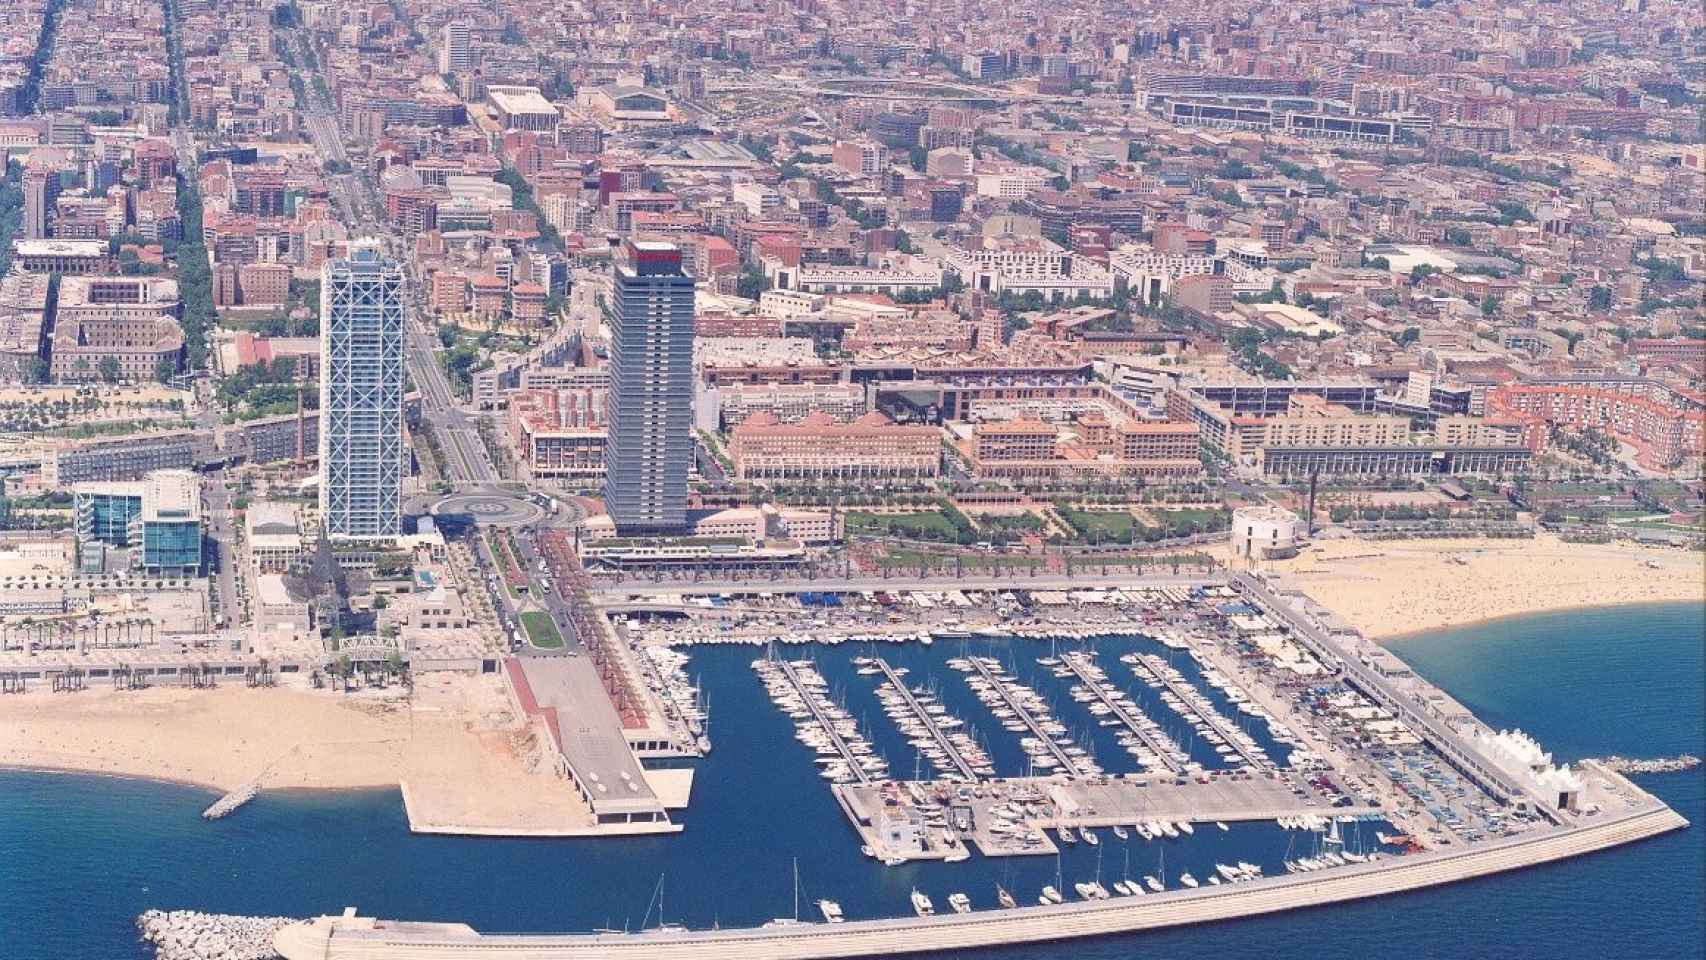 Vista aérea de Barcelona.